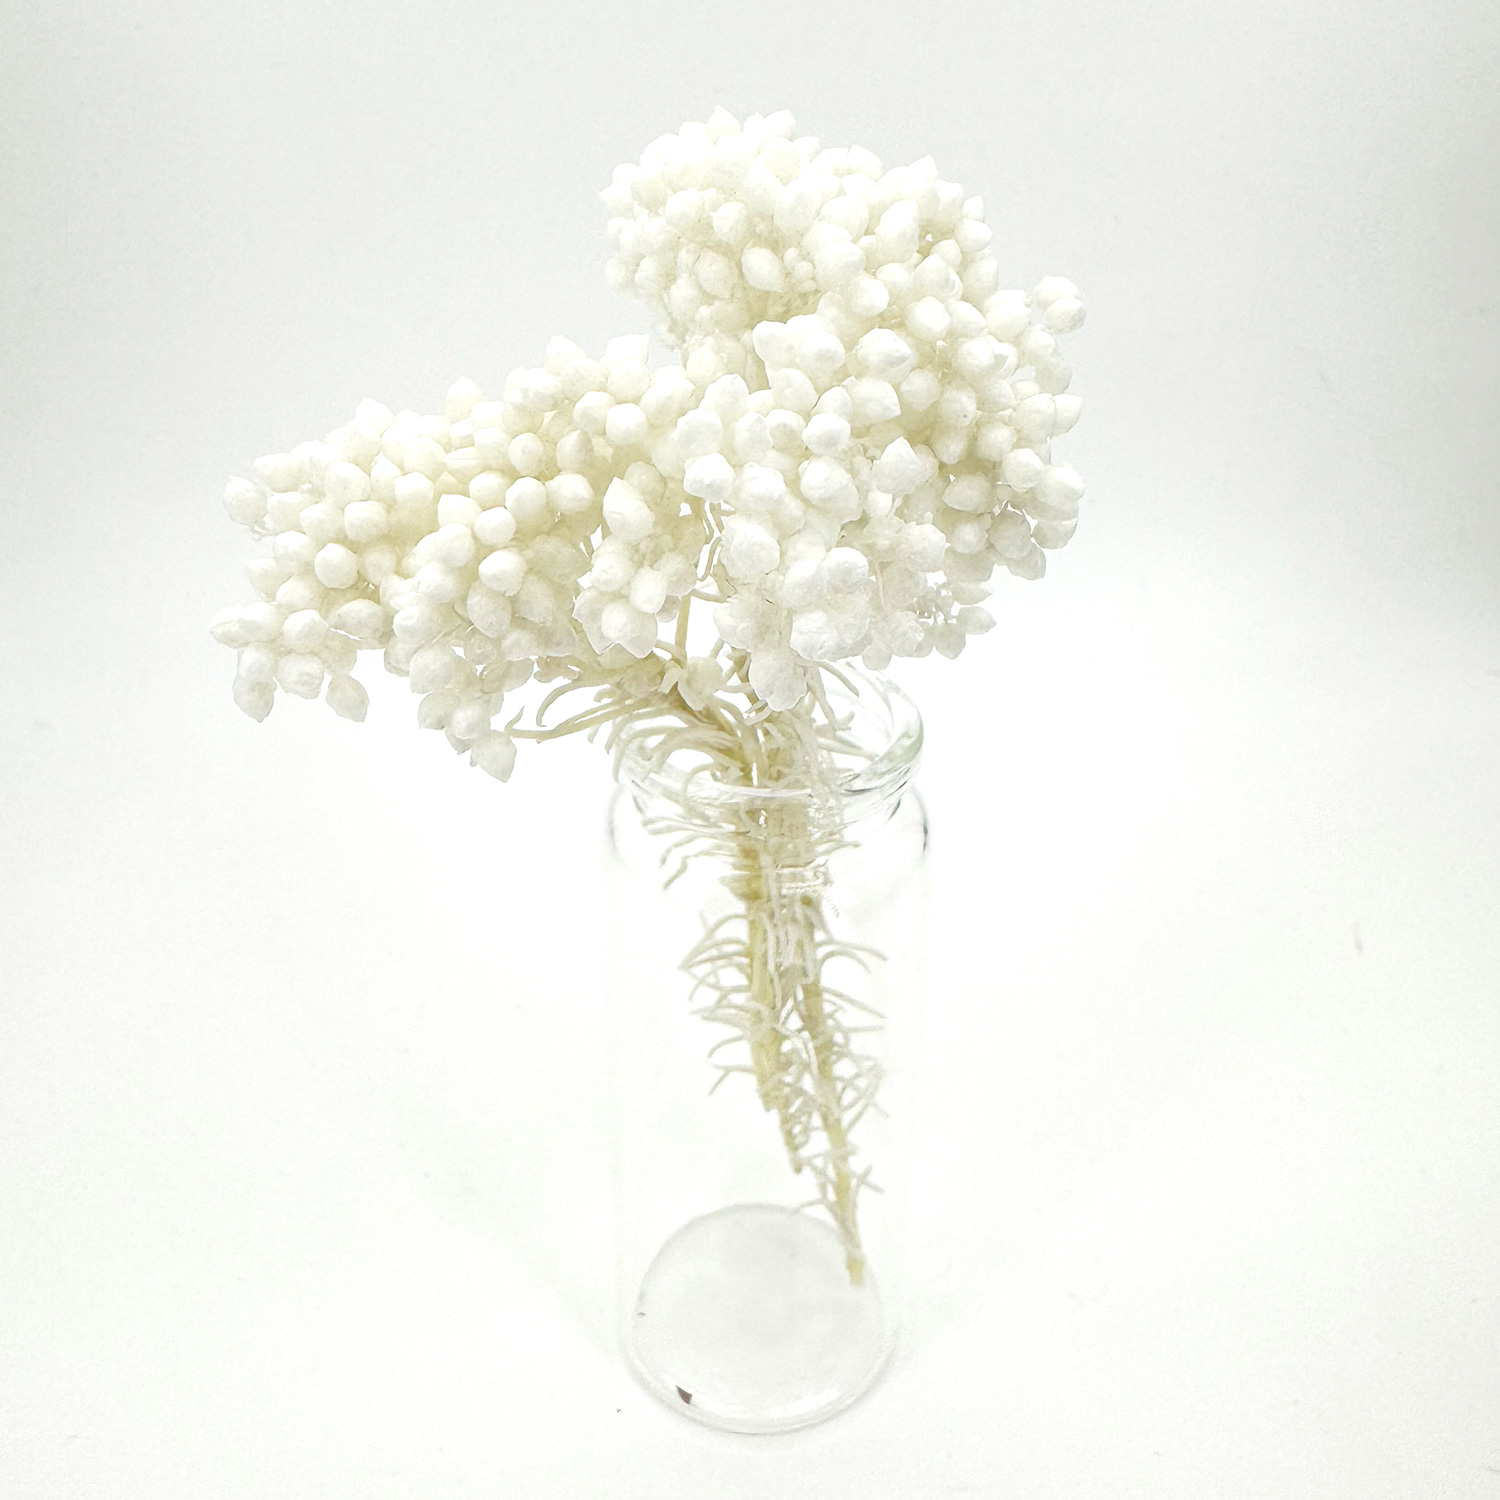 白色小米花乾花